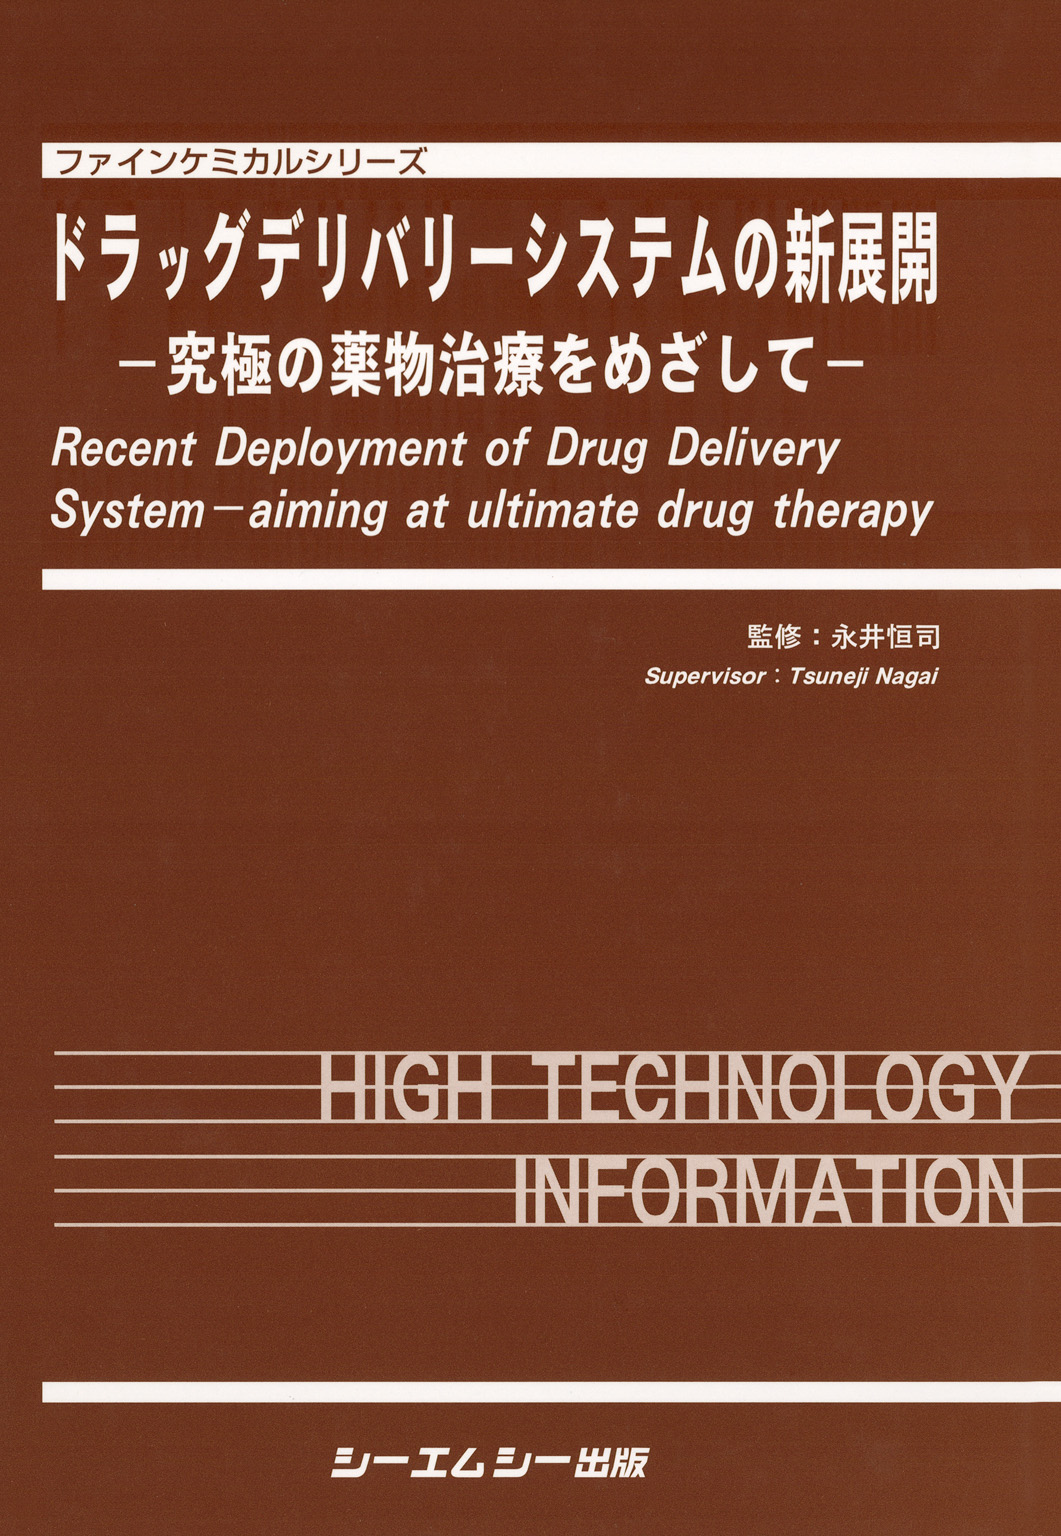 ドラッグデリバリーシステムの新展開 : 究極の薬物治療をめざして 1巻(書籍) - 電子書籍 | U-NEXT 初回600円分無料